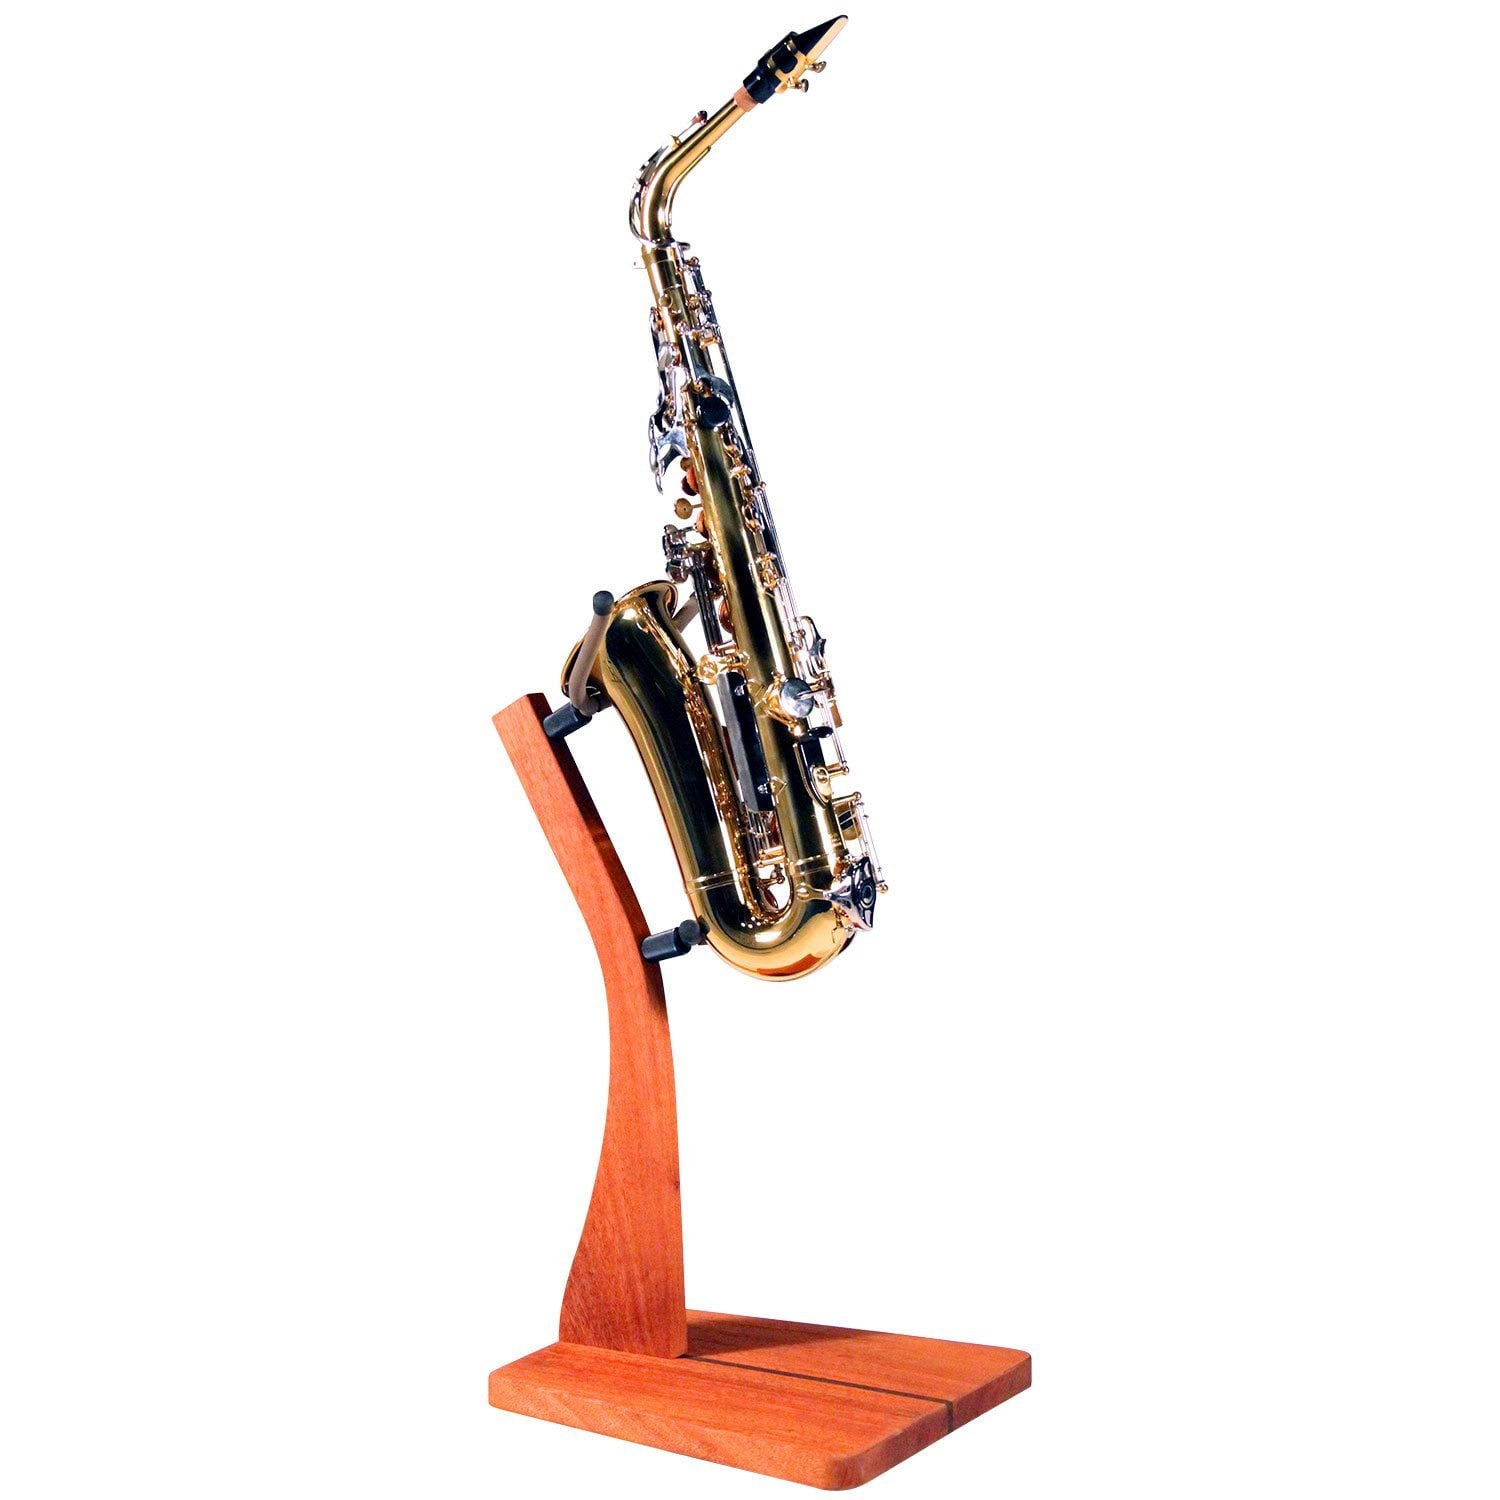 Kit de nettoyage pour saxophone, support professionnel pour saxophone alto,  support en métal, kit de nettoyage pour saxophone, accessoires pour